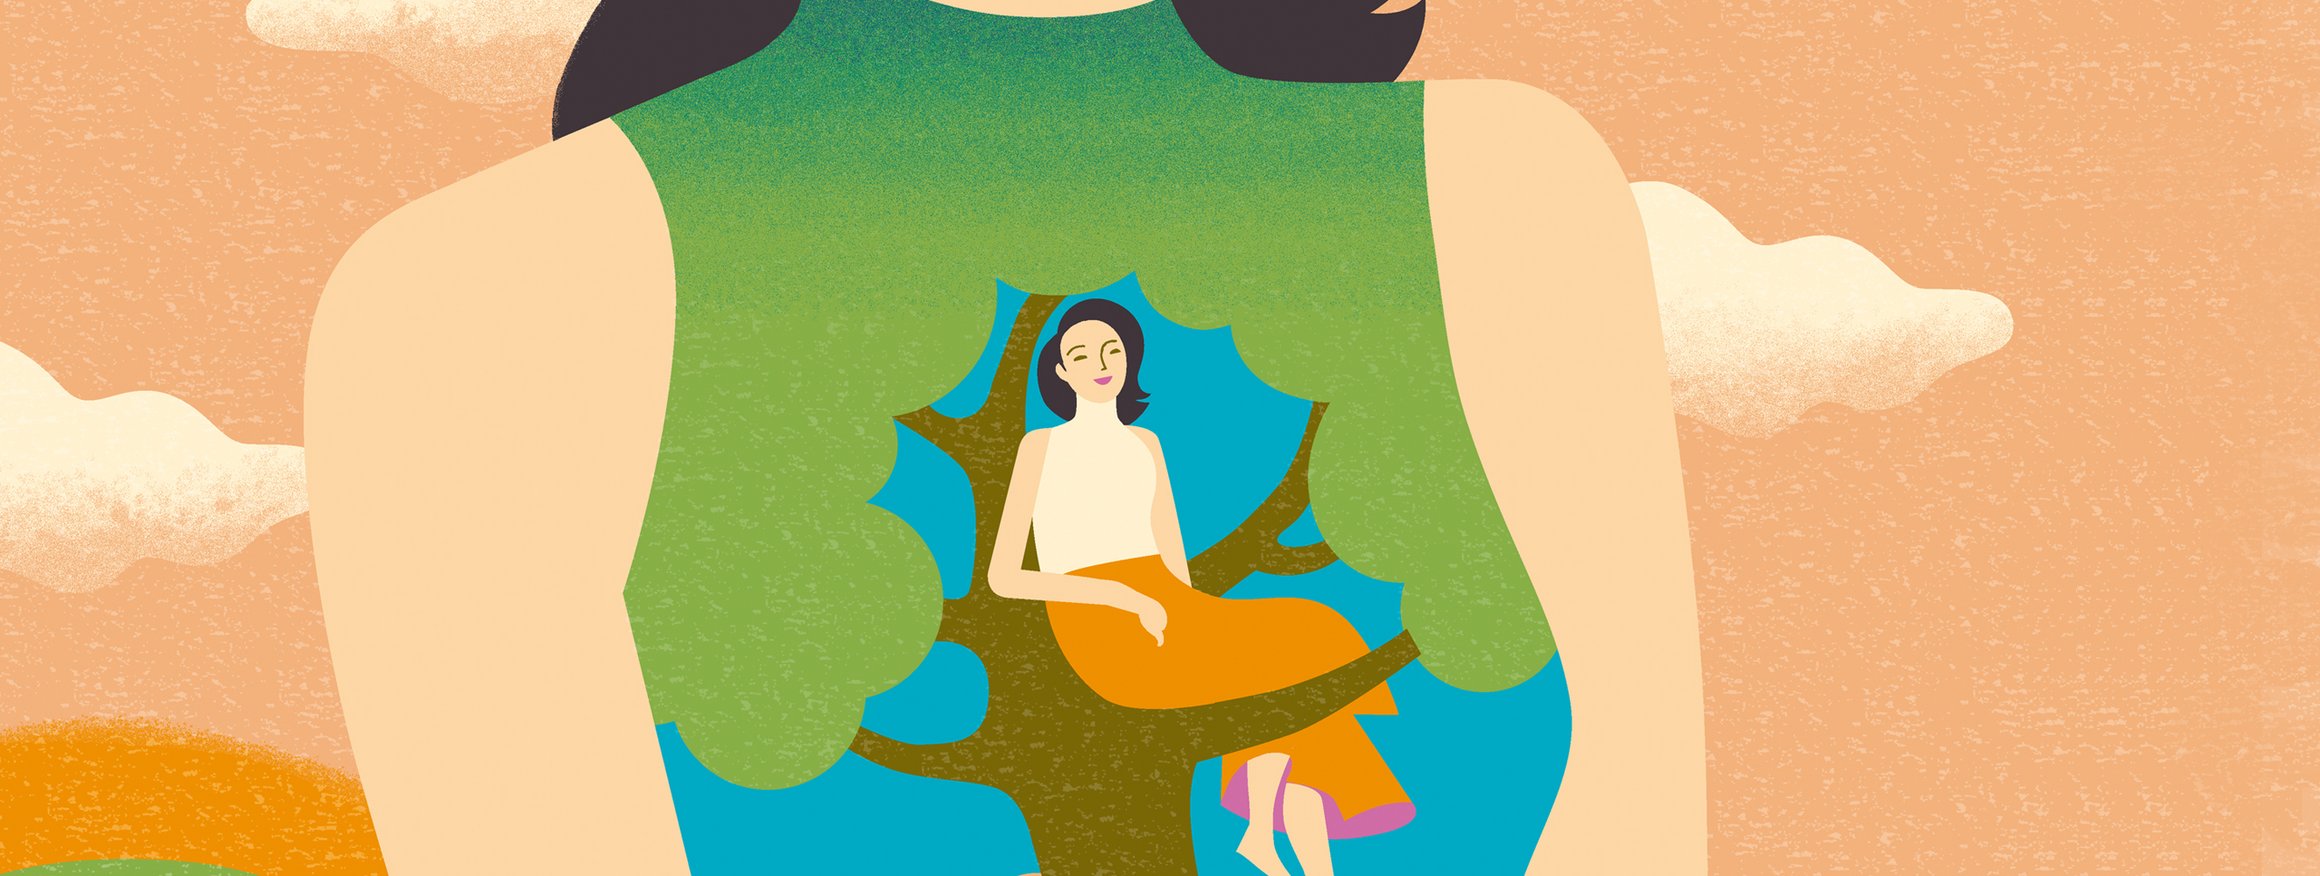 Eine Frau trägt ein Shirt, auf dem sie selbst zu sehen ist, wie sie entspannt auf dem Ast eines Baumes sitzt, hinter ihr der blaue Himmel